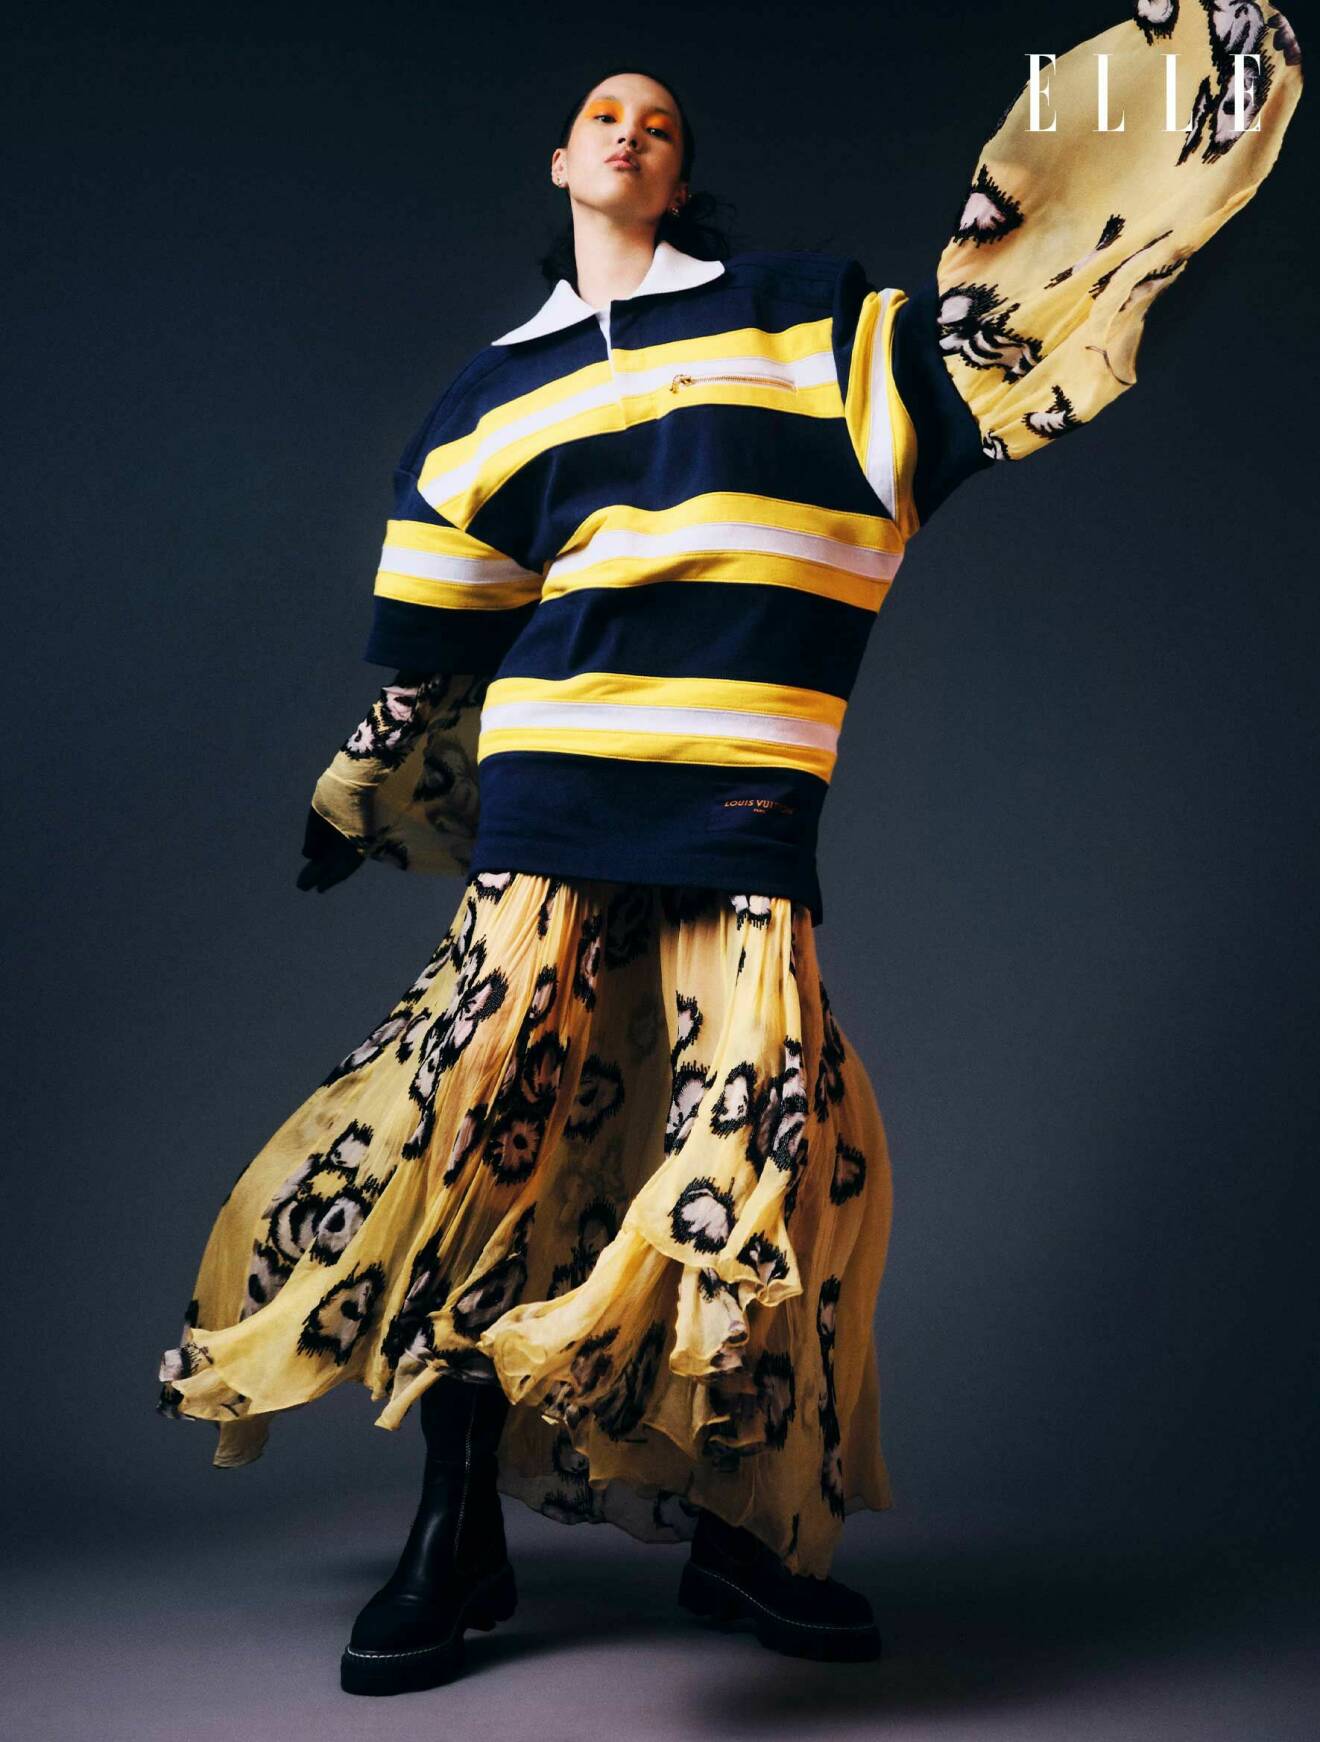 Fotomodellen har på sig en randig klänning över en gul klänning med mönster, båda från Louis Vuitton.